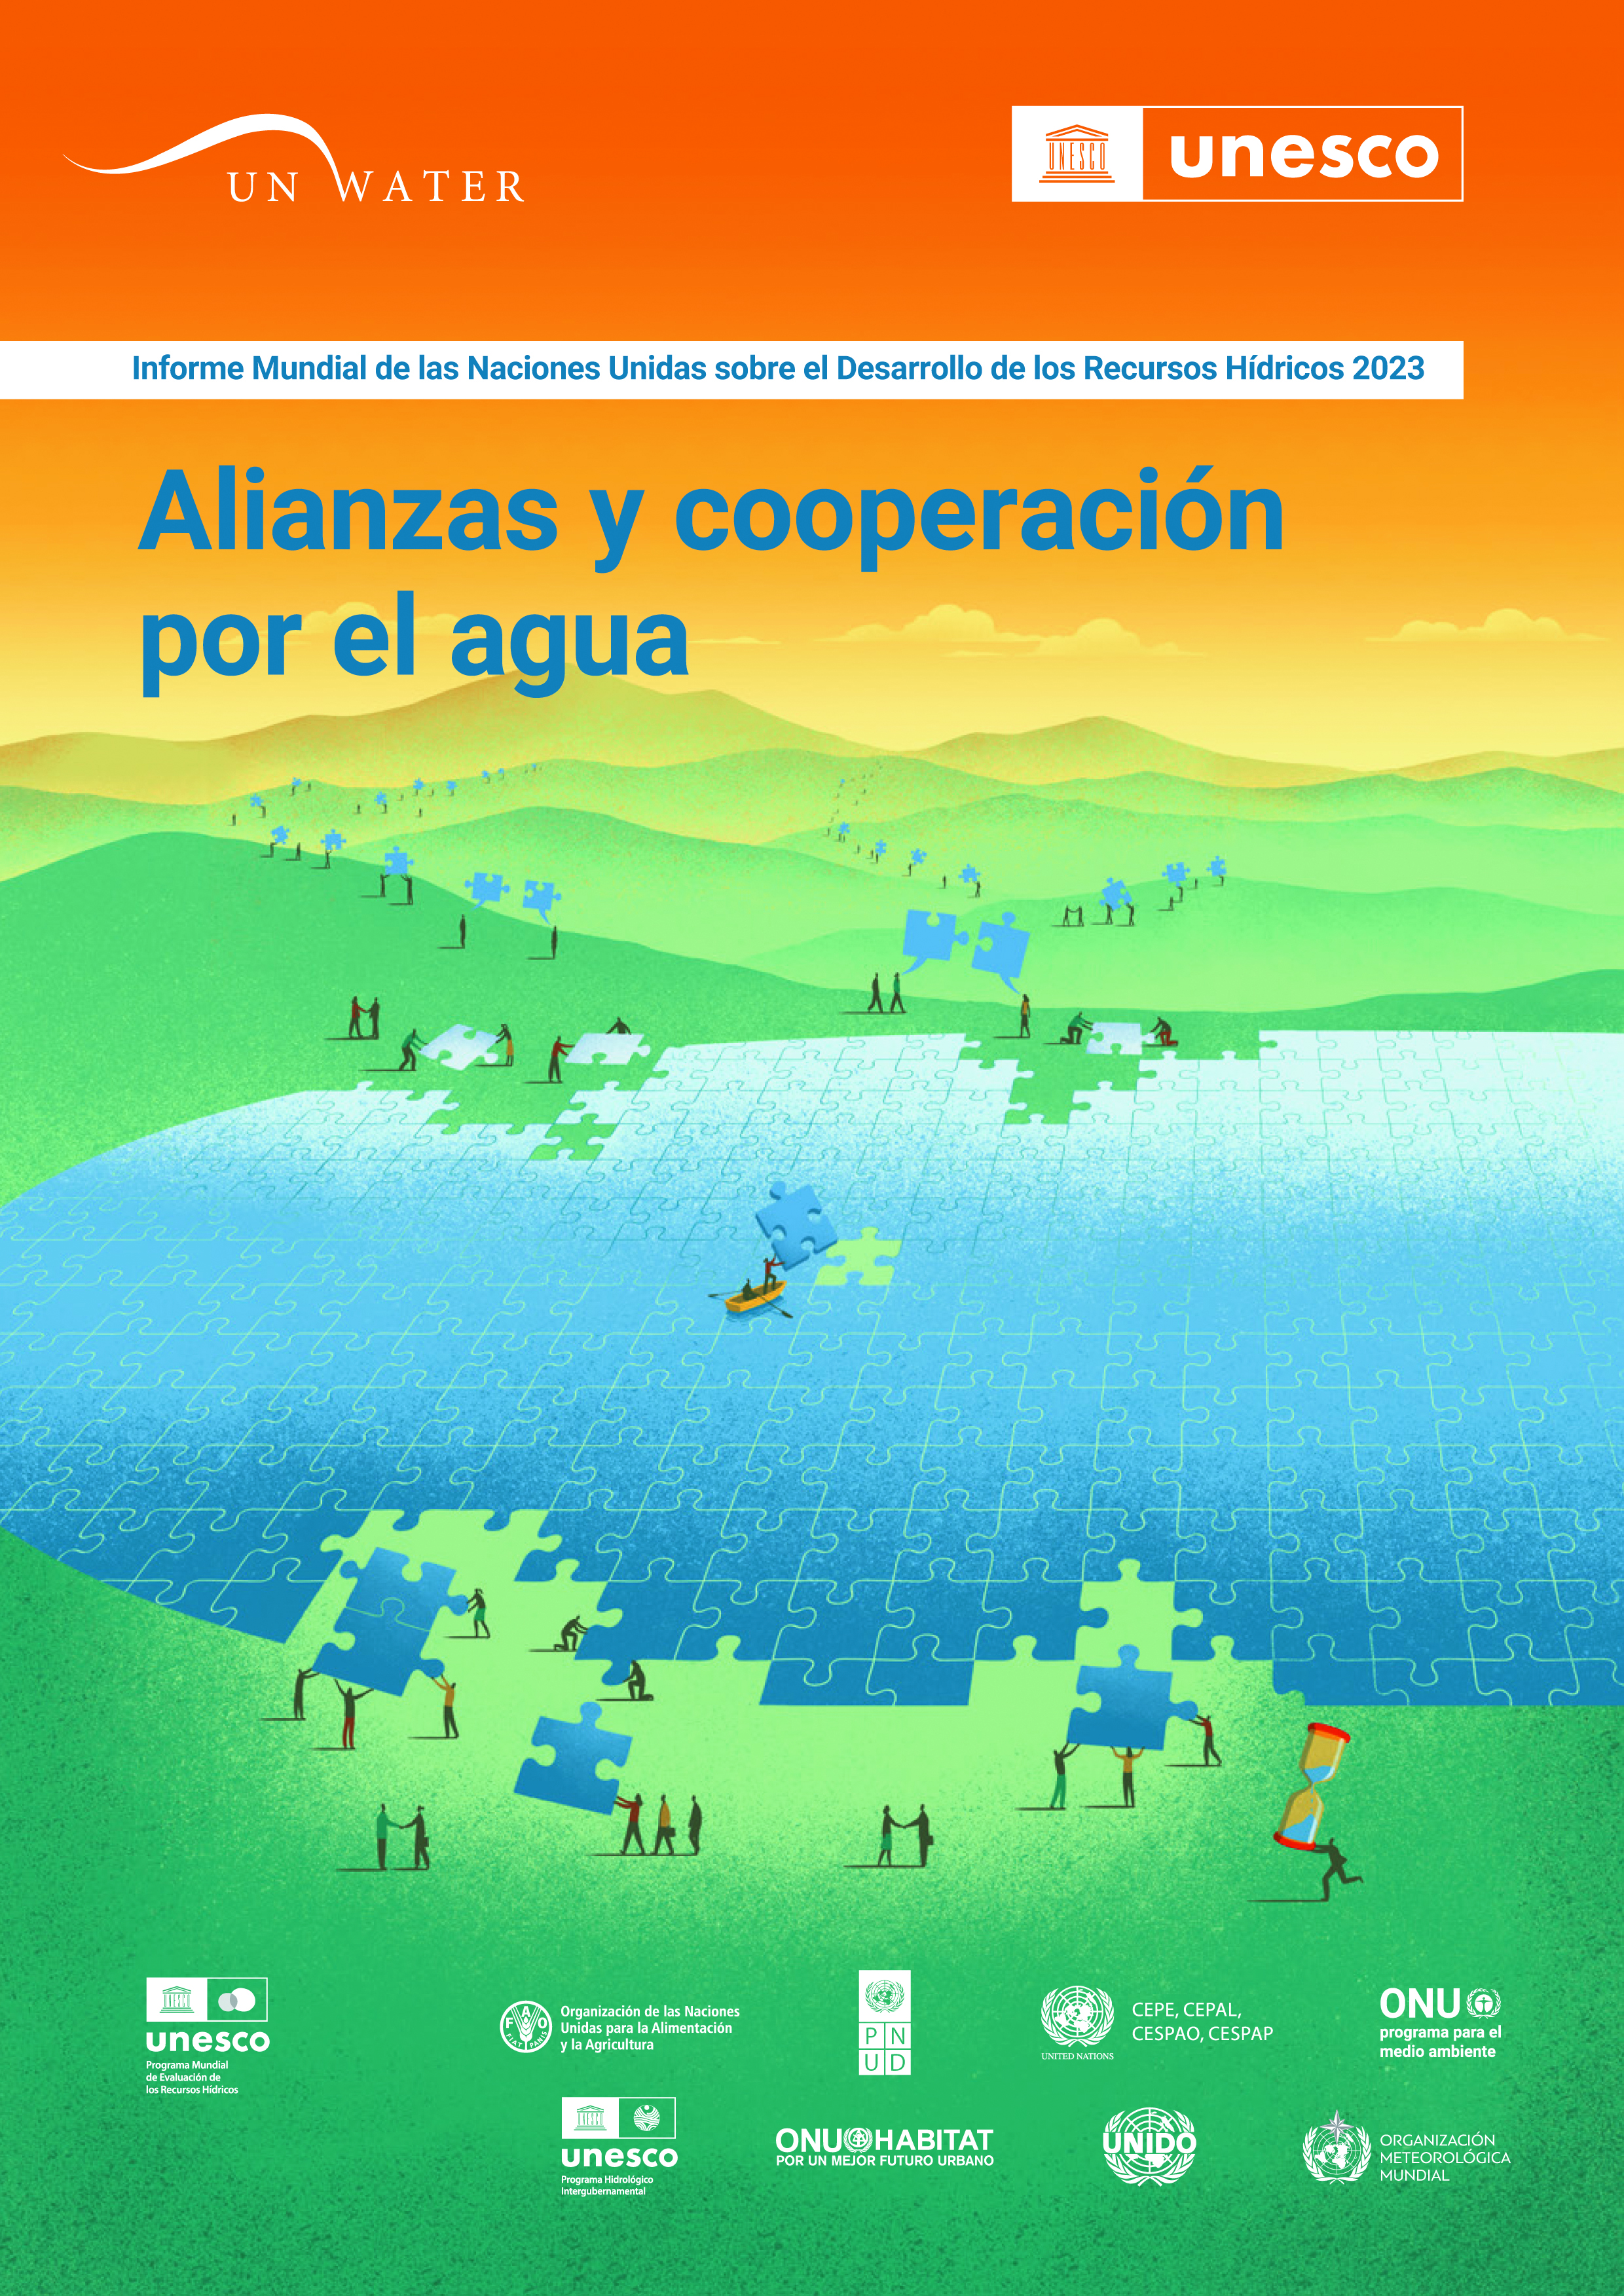 image of Informe Mundial de las Naciones Unidas sobre el Desarrollo de los Recursos Hídricos 2023